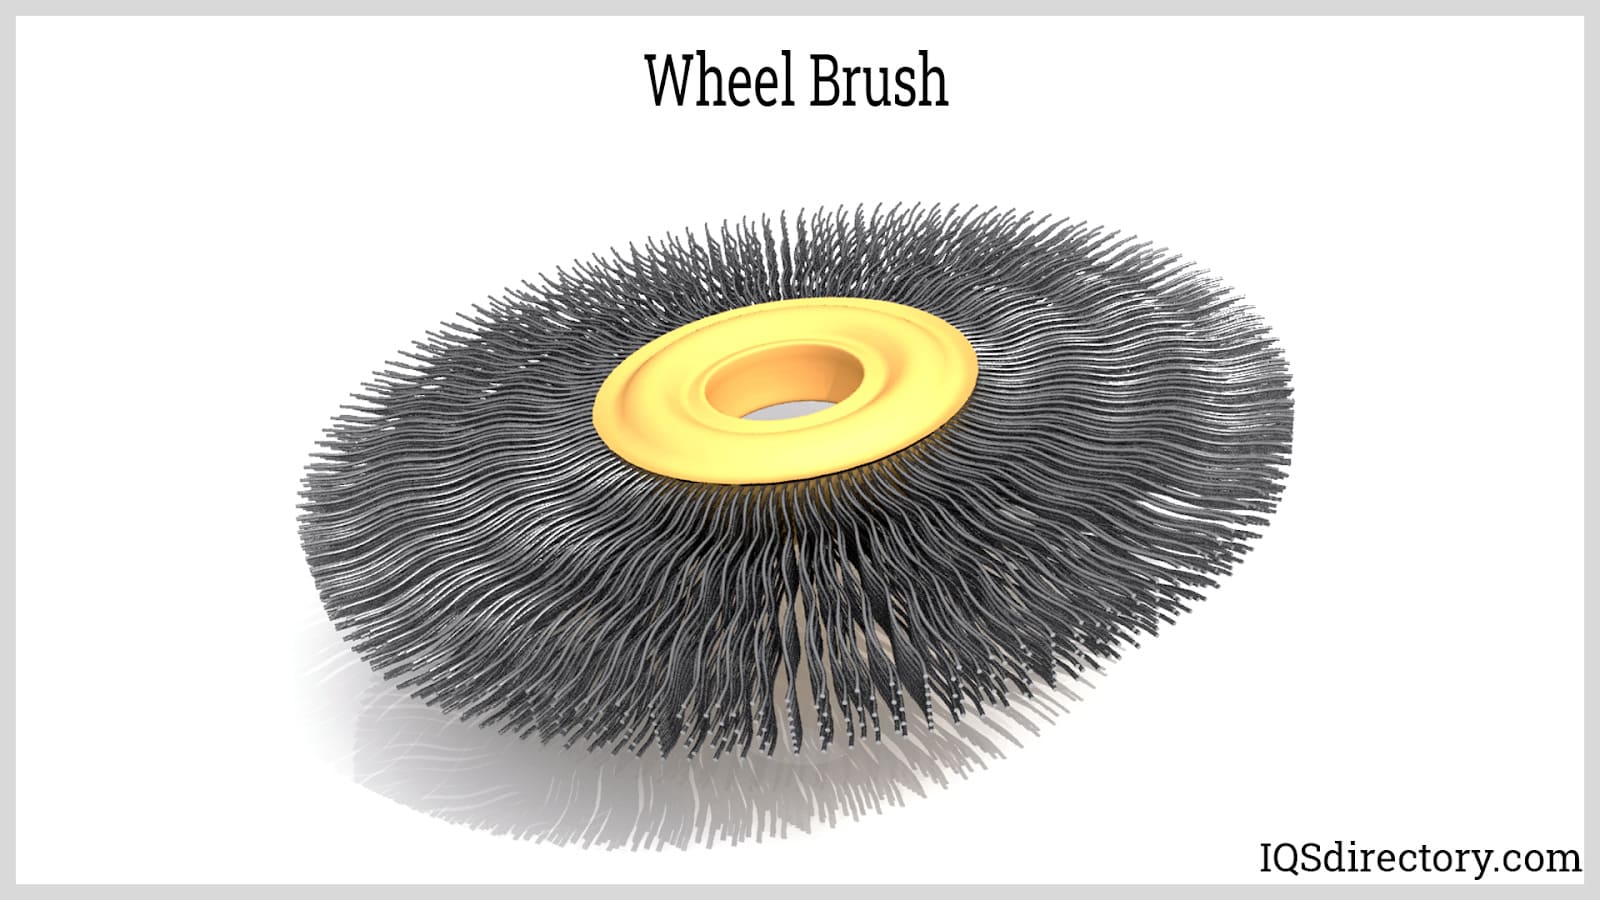 Heavy Duty Brass Wire Brush Wheel / Steel Wheel Brush For Cleaning